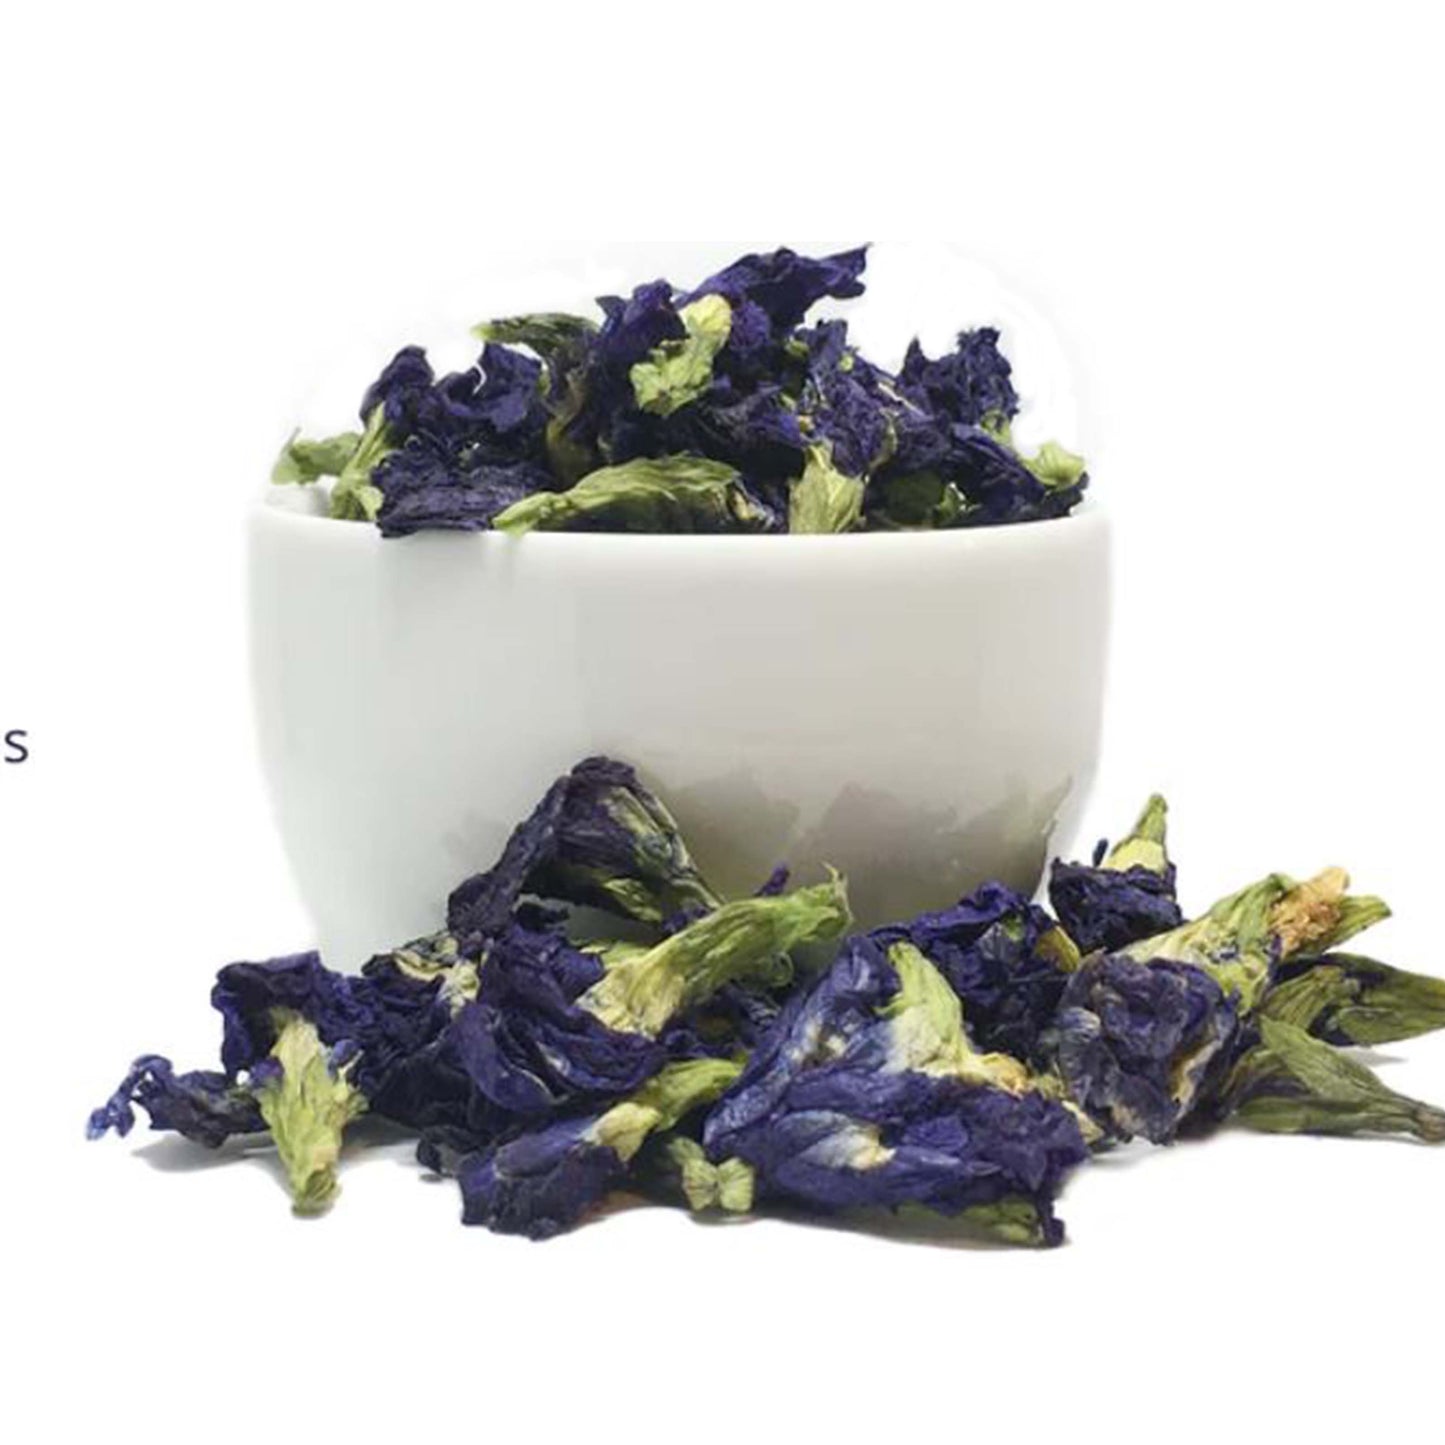 Butterfly Pea Flower Herbal Tea – ArtfulTea